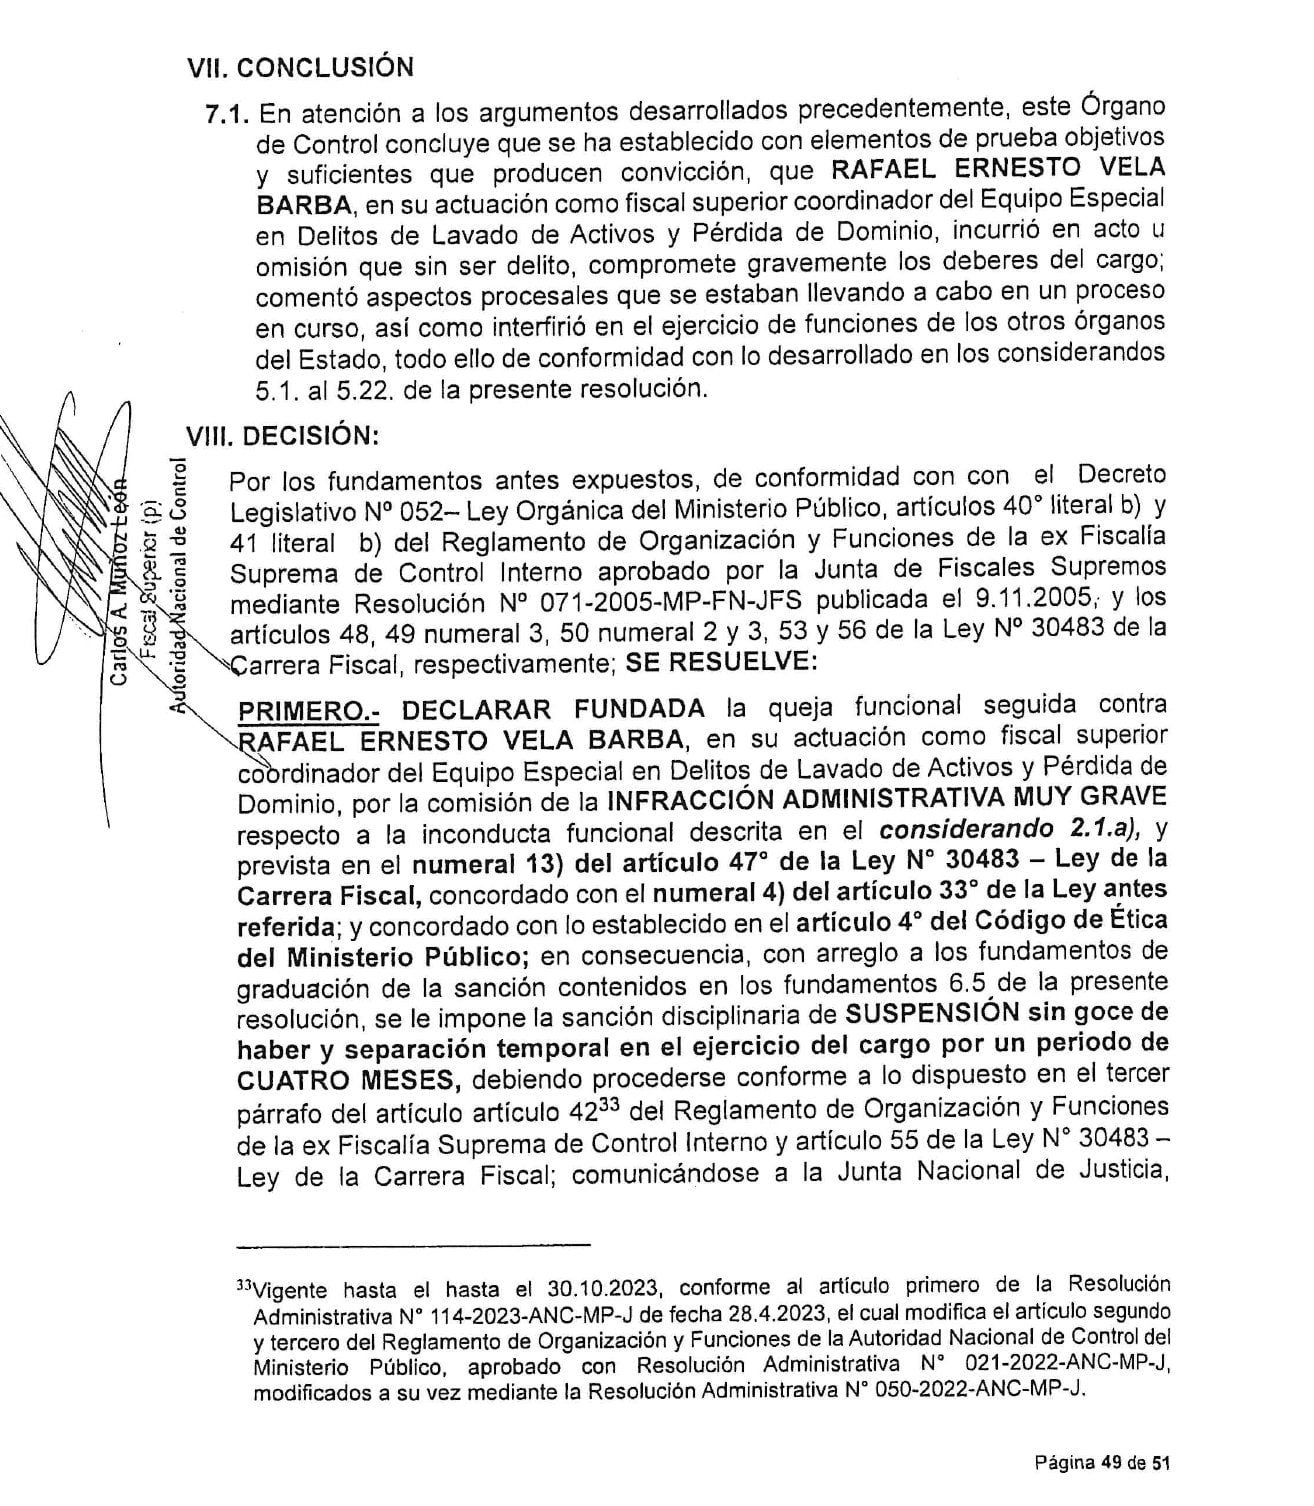 Documento de la Autoridad Nacional de Control del Ministerio Público